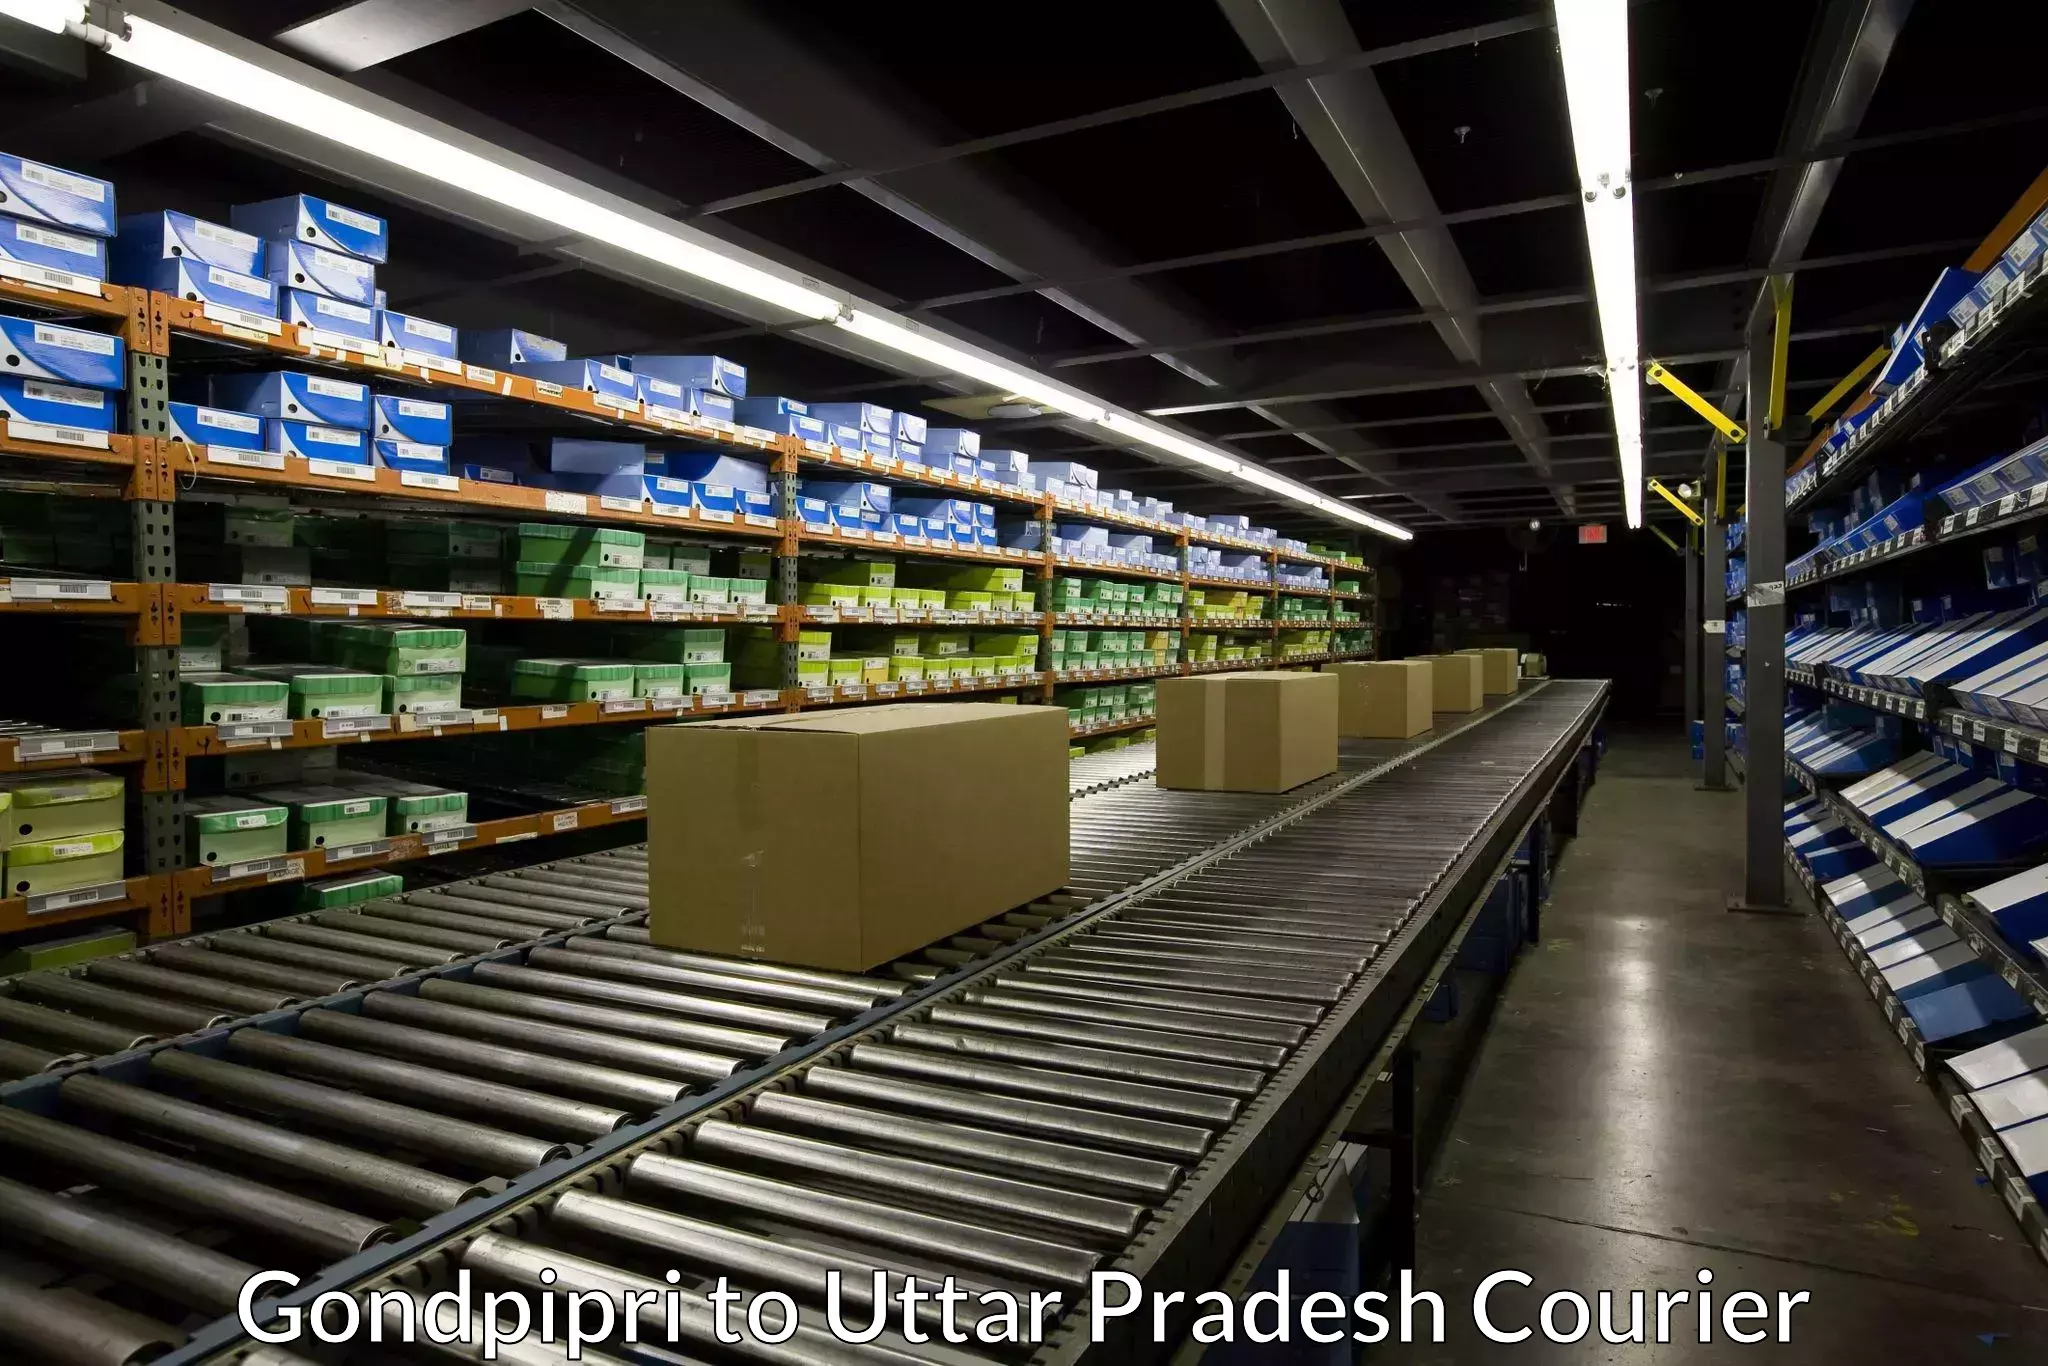 High value parcel delivery in Gondpipri to Uttar Pradesh